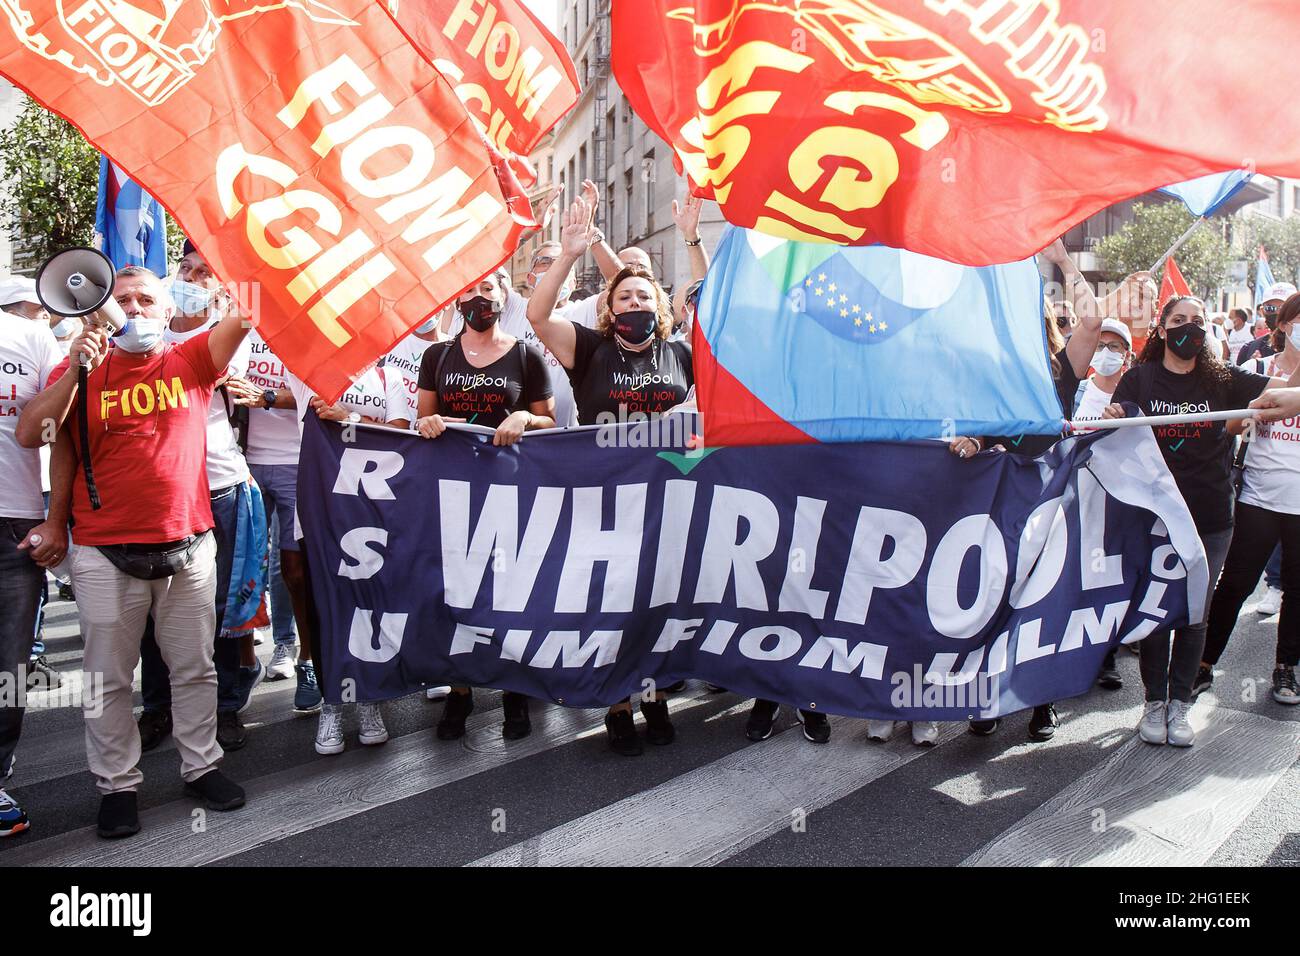 Roberto Monaldo / LaPresse 16-09-2021 Roma (Italia) Demostración de los trabajadores de Whirlpool frente al Ministerio de Desarrollo Económico en la foto un momento de la manifestación Foto de stock